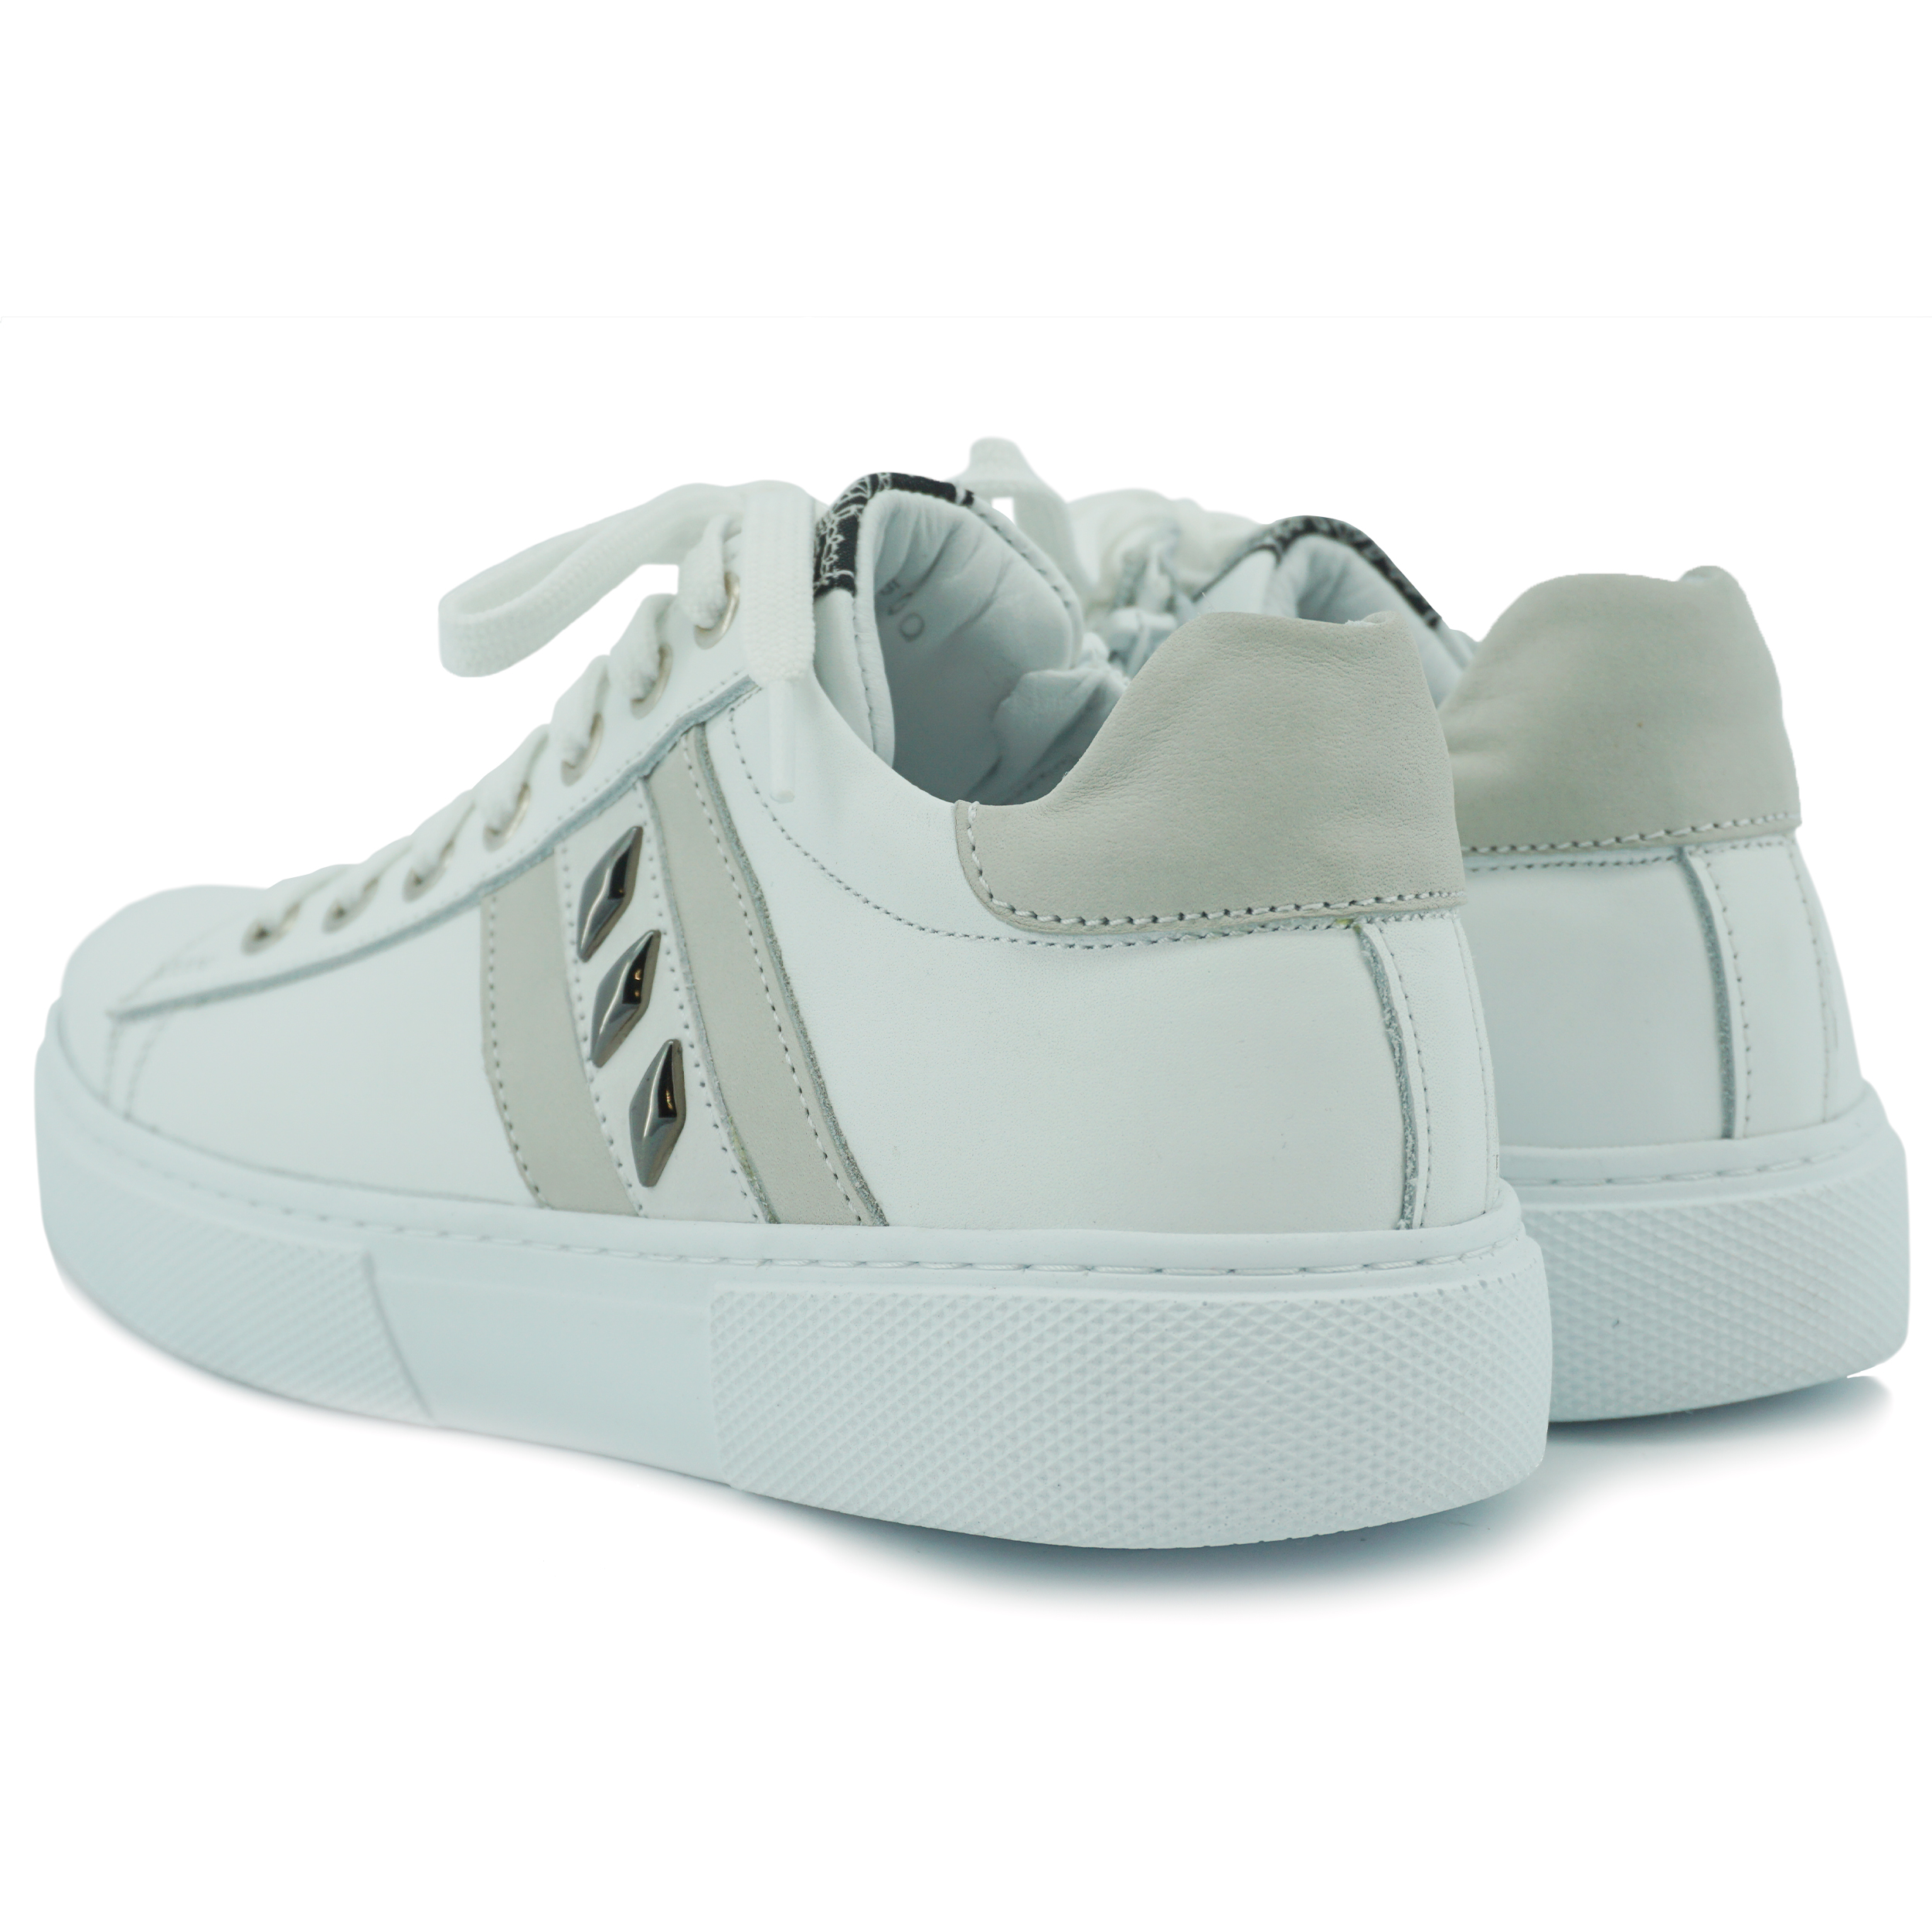 Twins 321165 Sneaker White 3.5